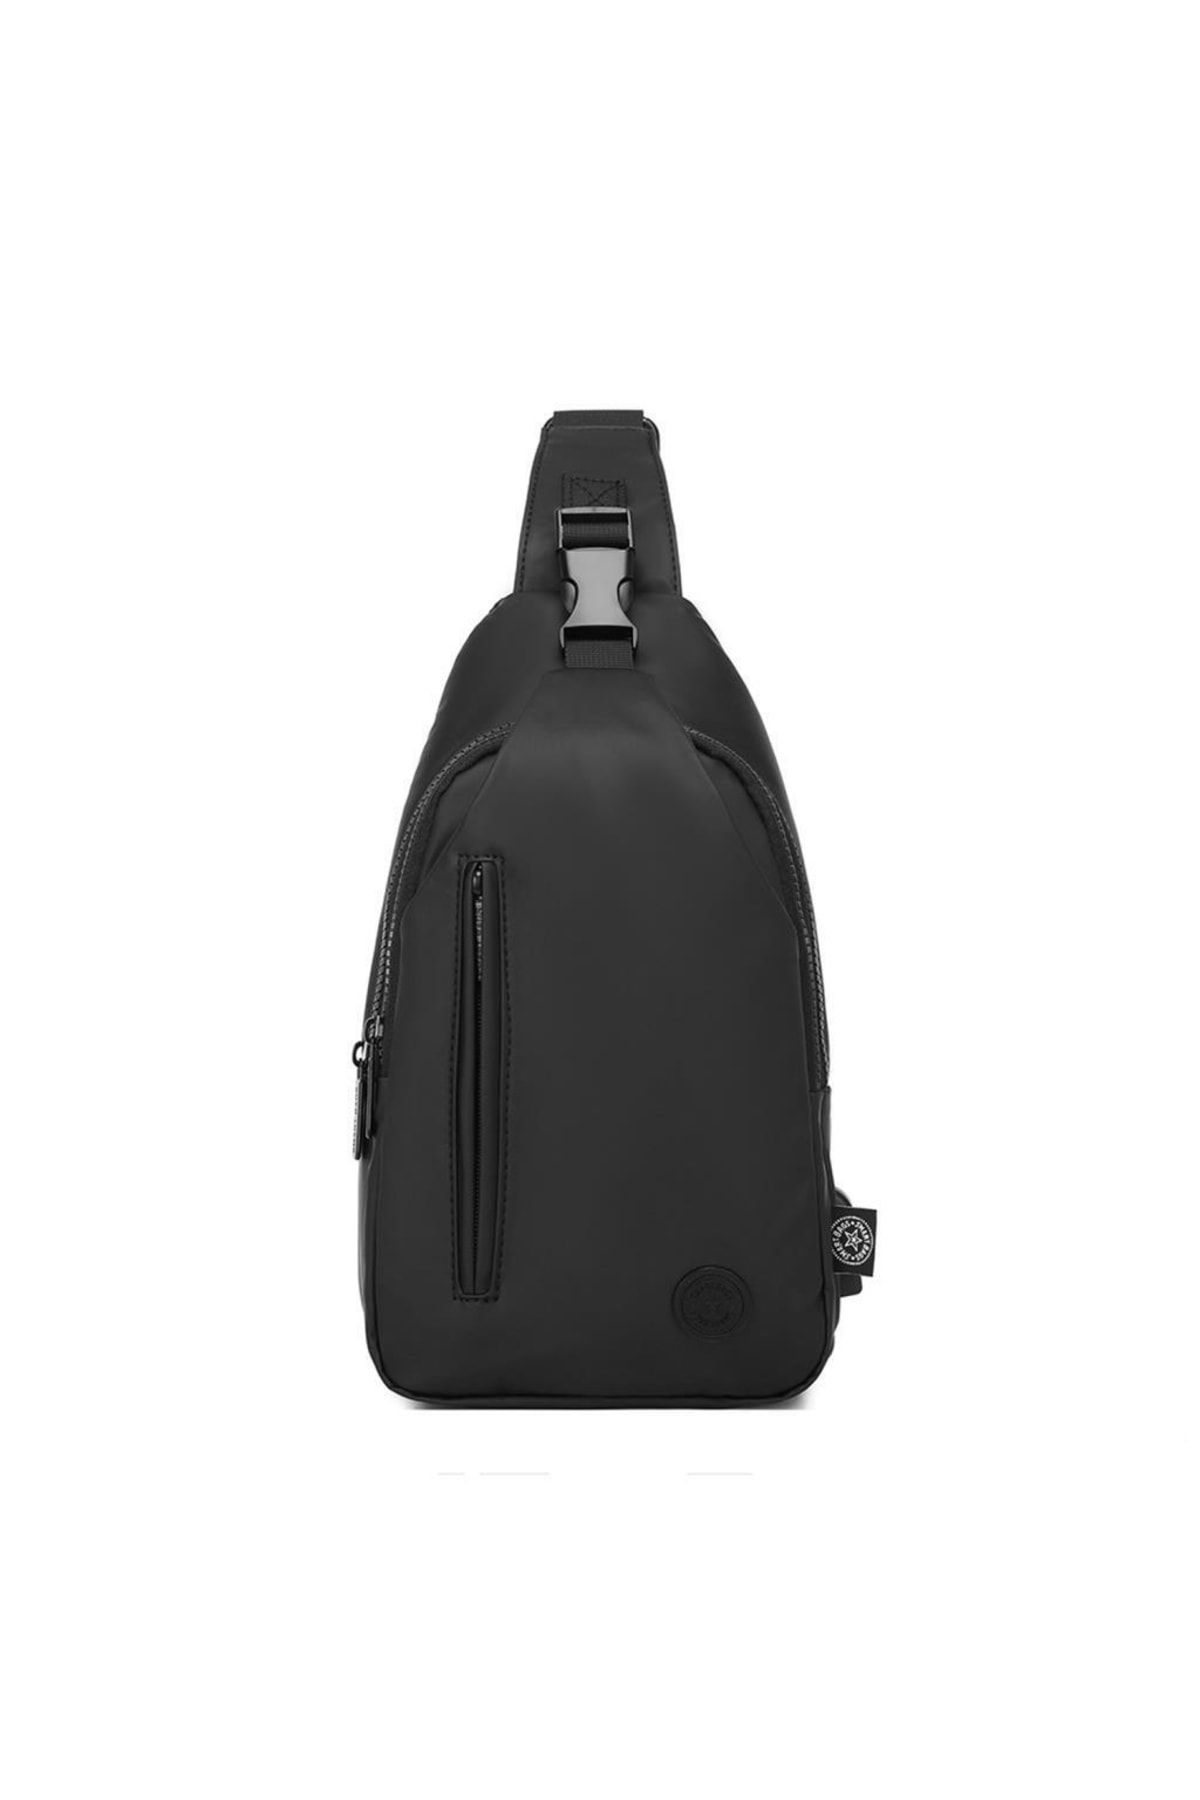 Smart Bags Gumi Kumaş Uniseks Bodybag Omuz Çantası 8654 Siyah